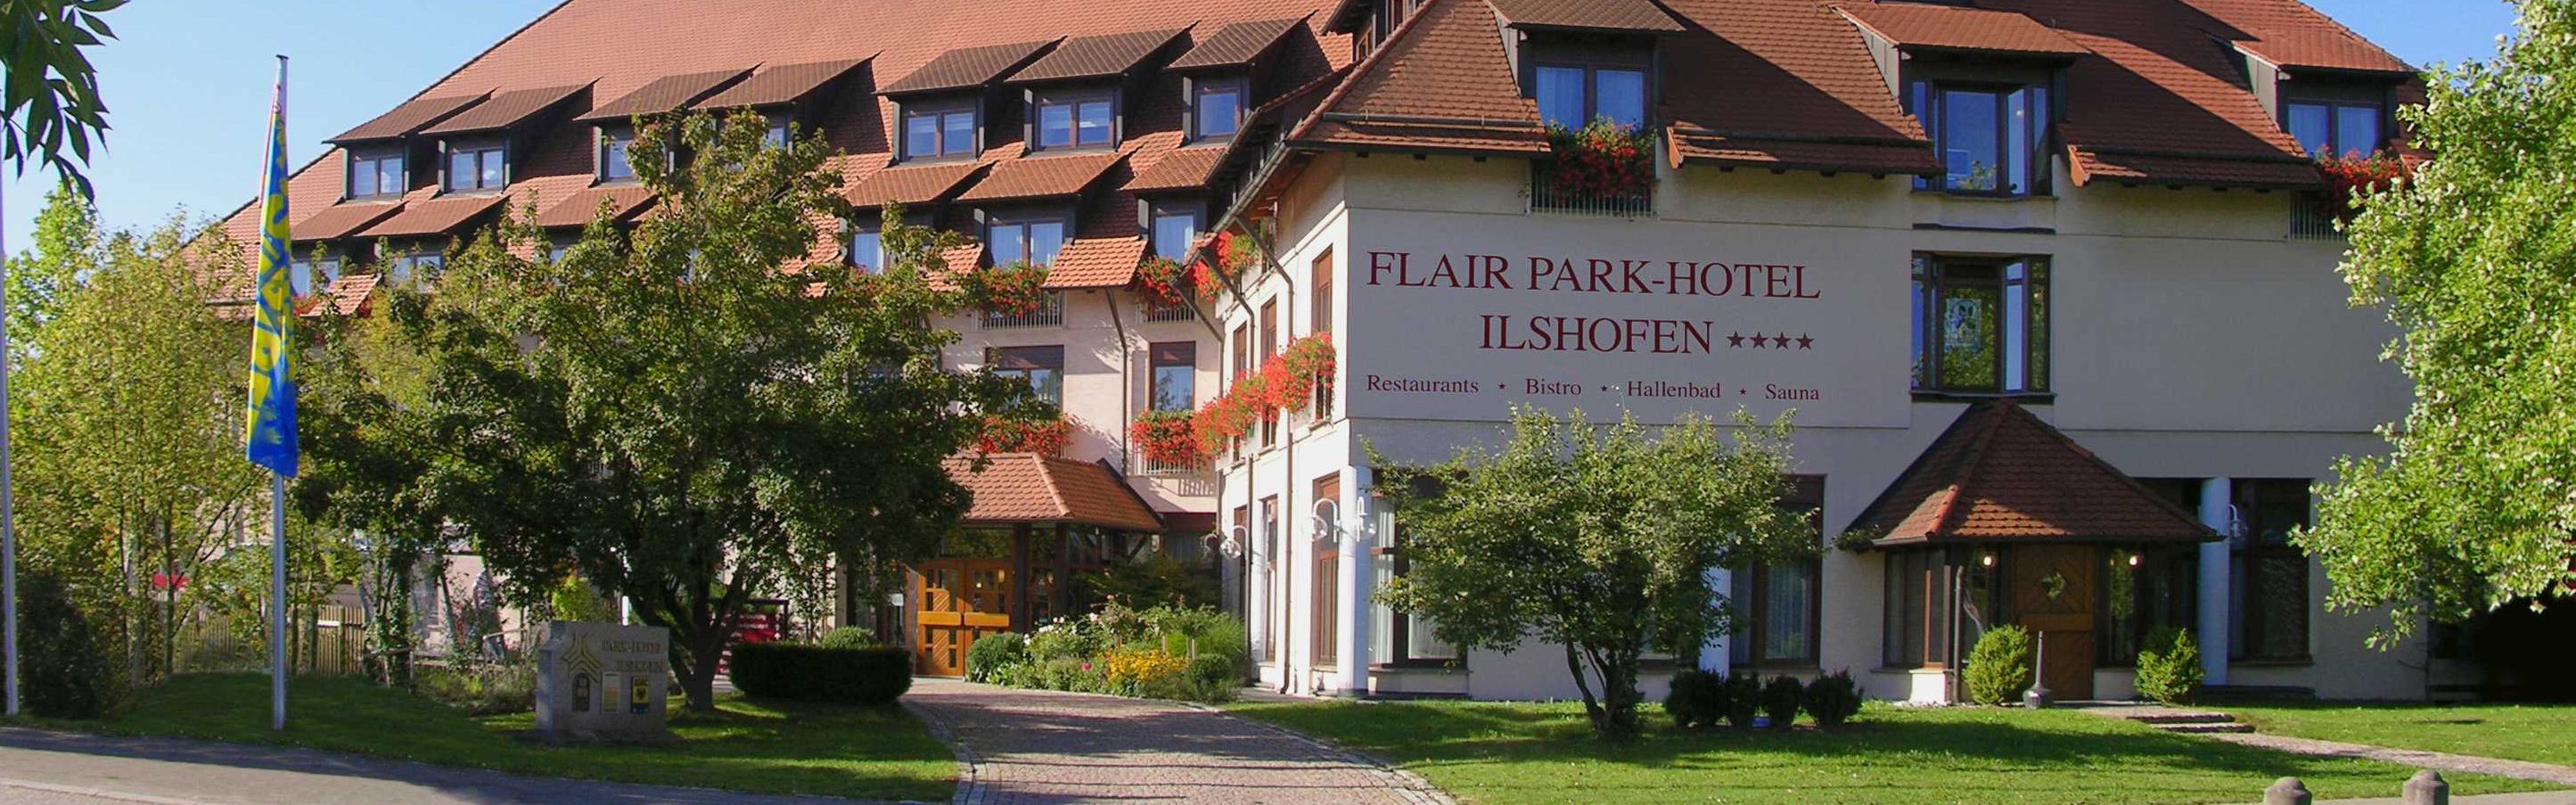 Flair Park Hotel